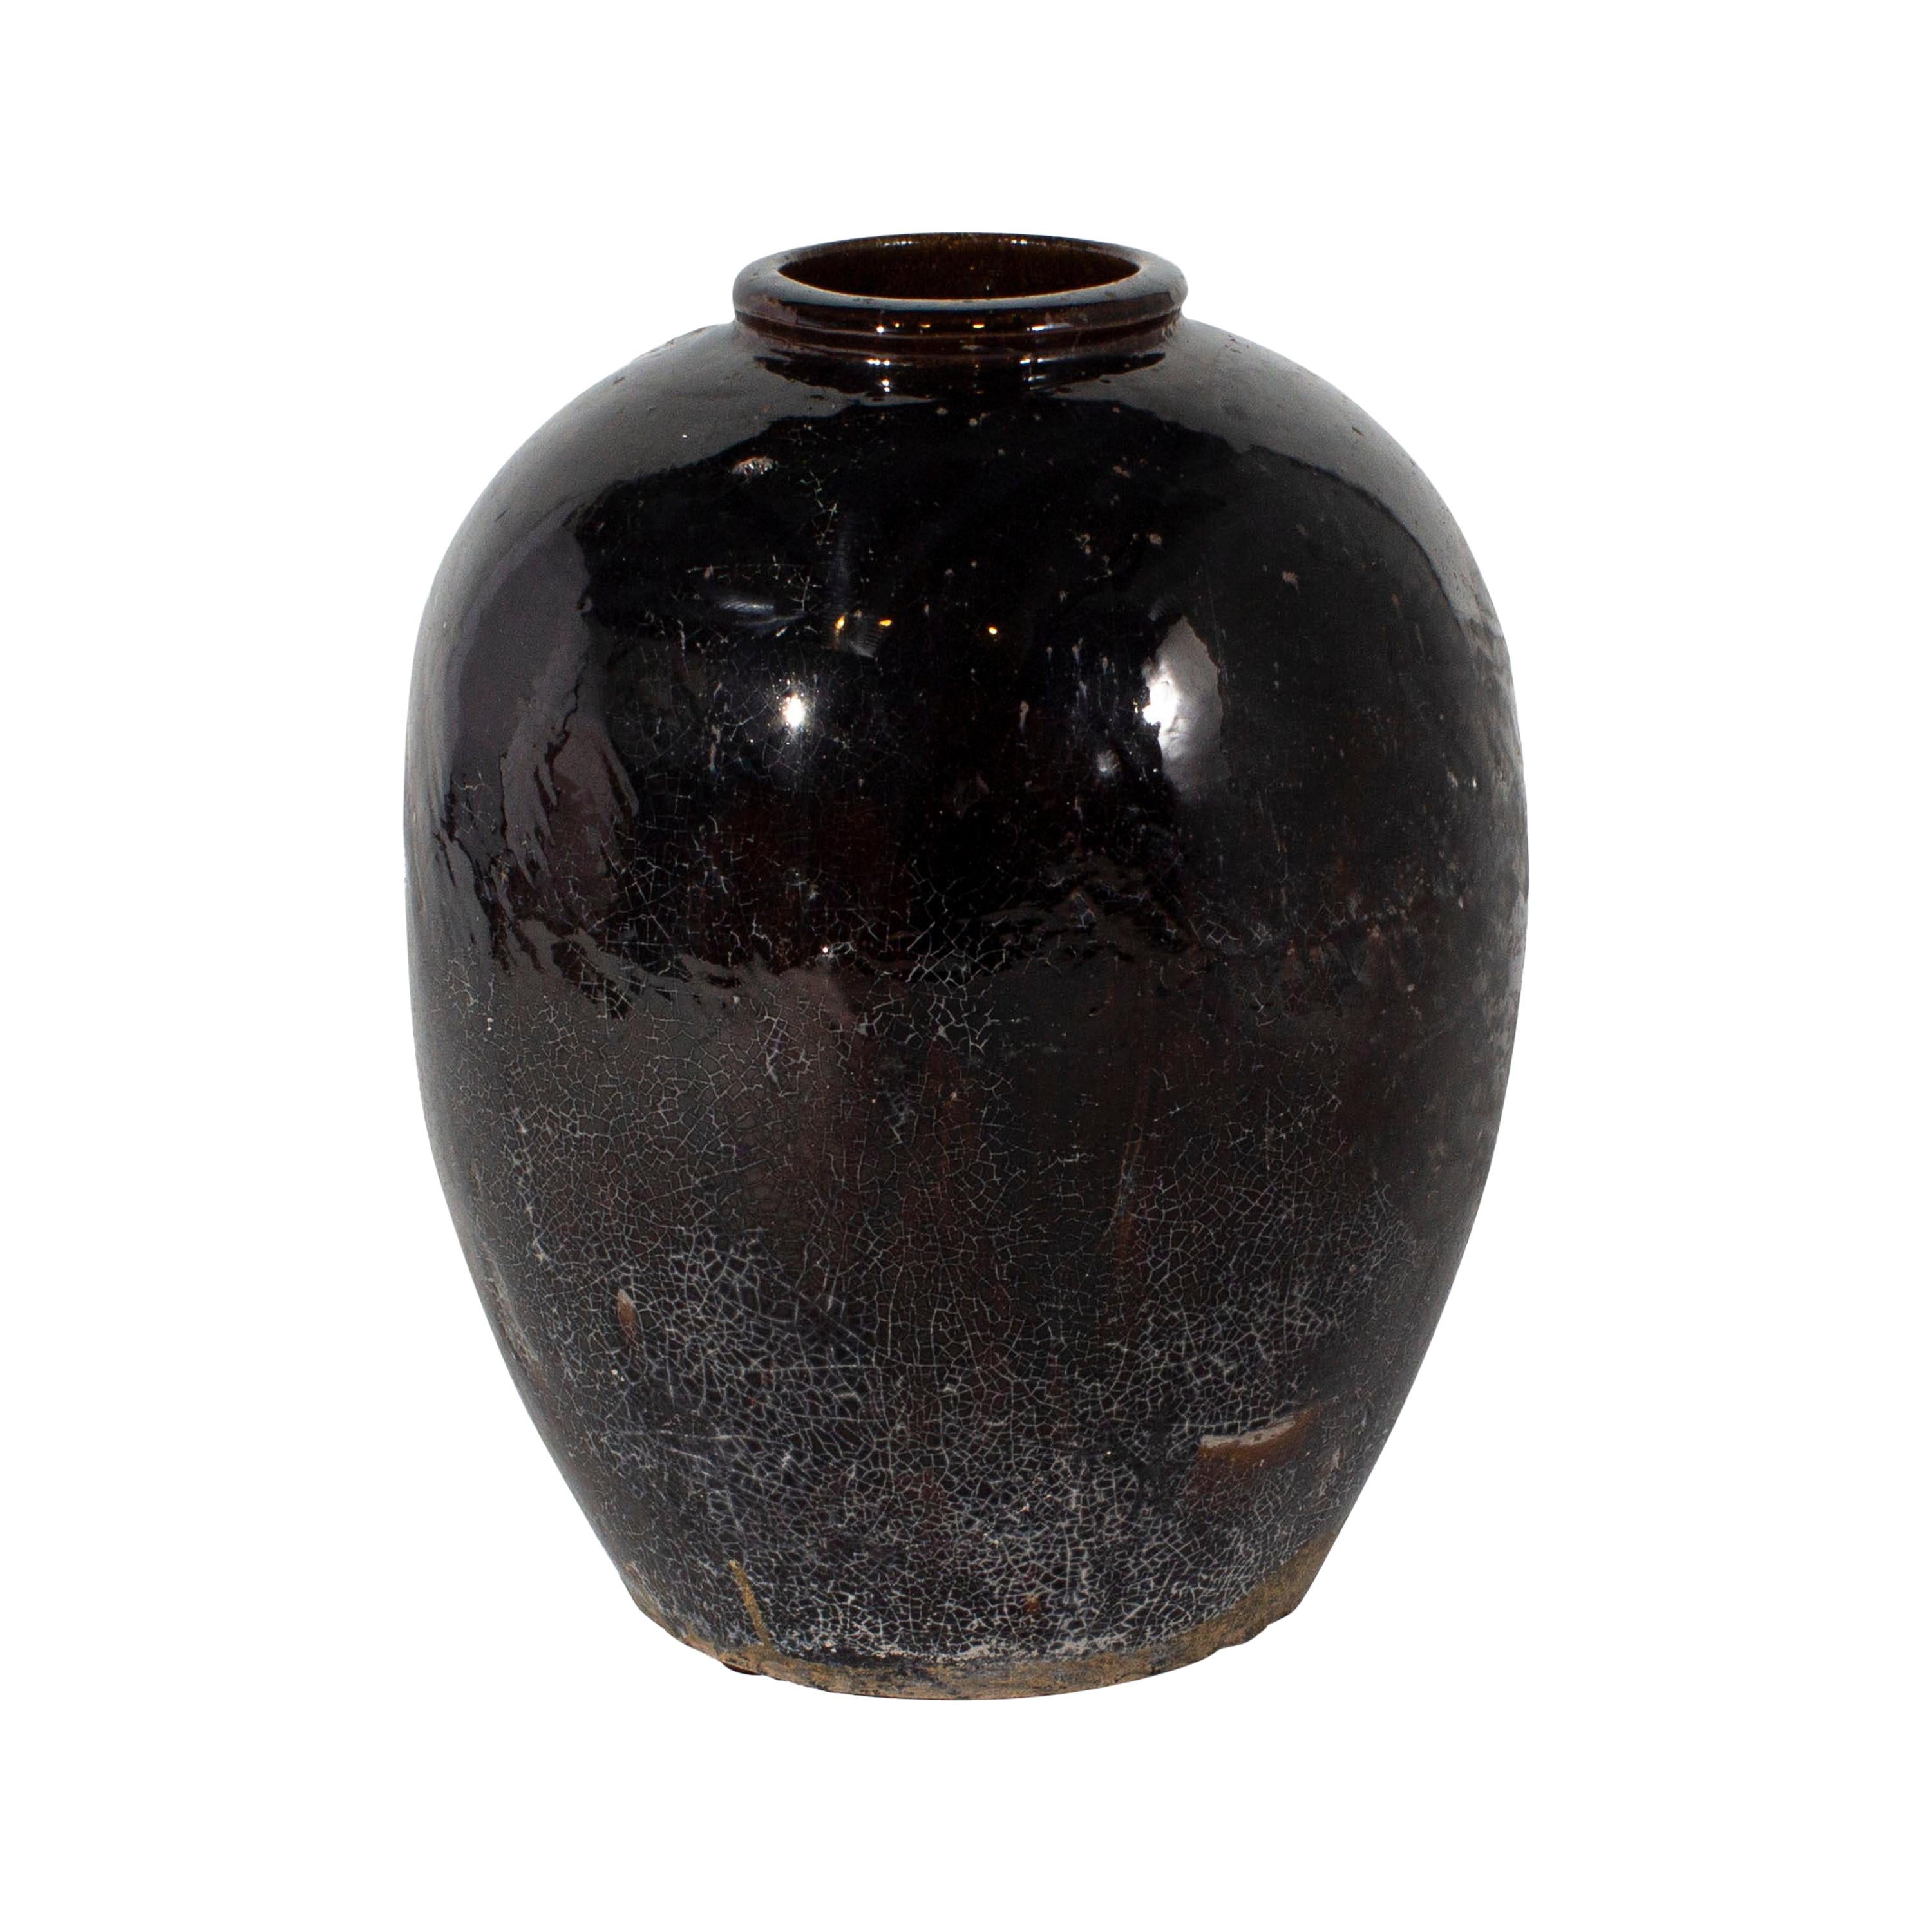 Vintage Glazed Small Mouth Storage Jar (JAR)